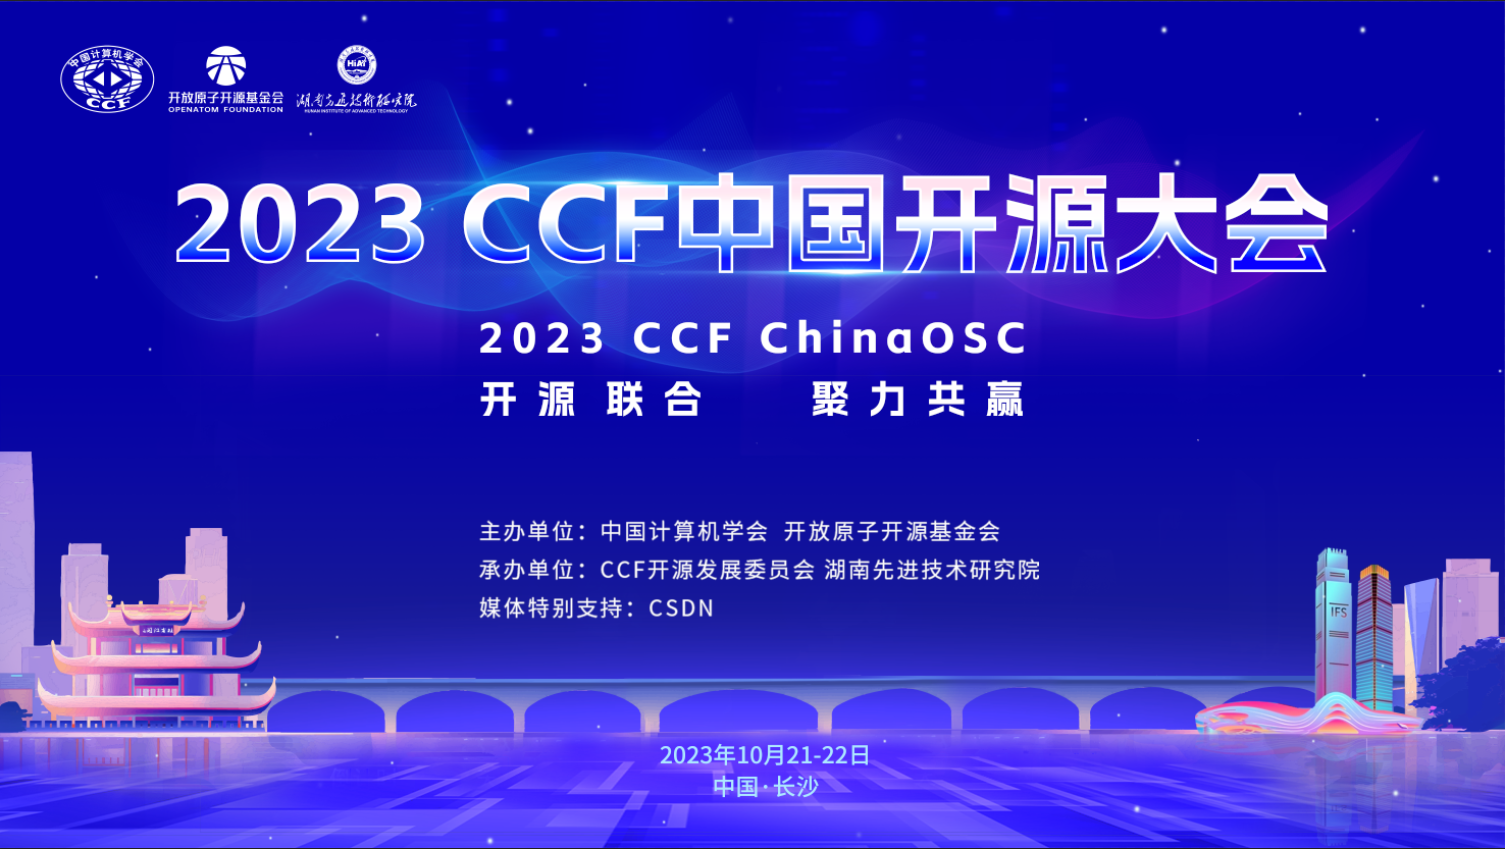 2023 CCF 中国开源大会